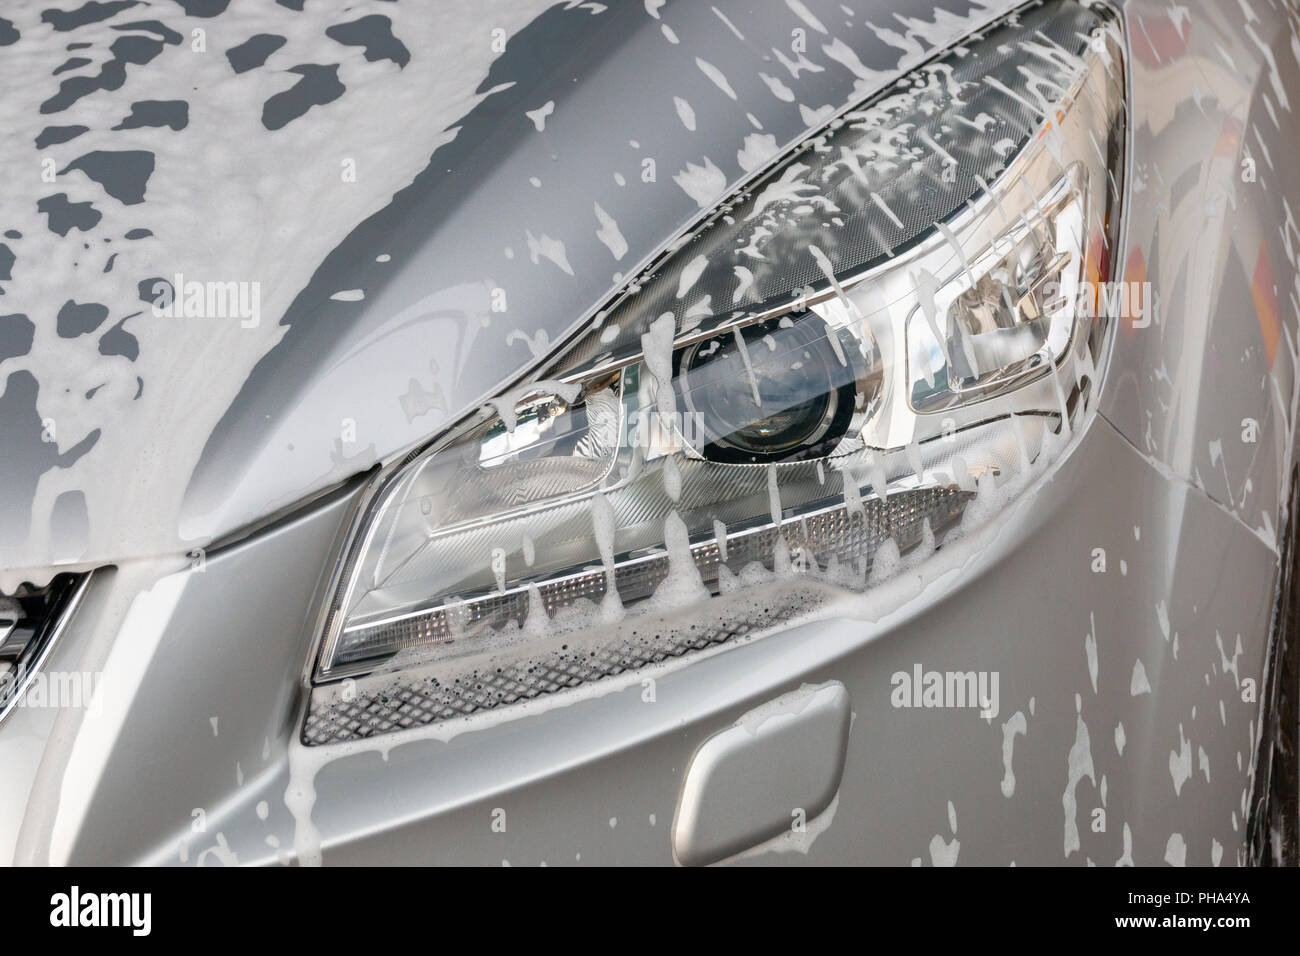 Una chiusura di schiuma di sapone sul lato destro della luce principale di un nastro in auto Foto Stock